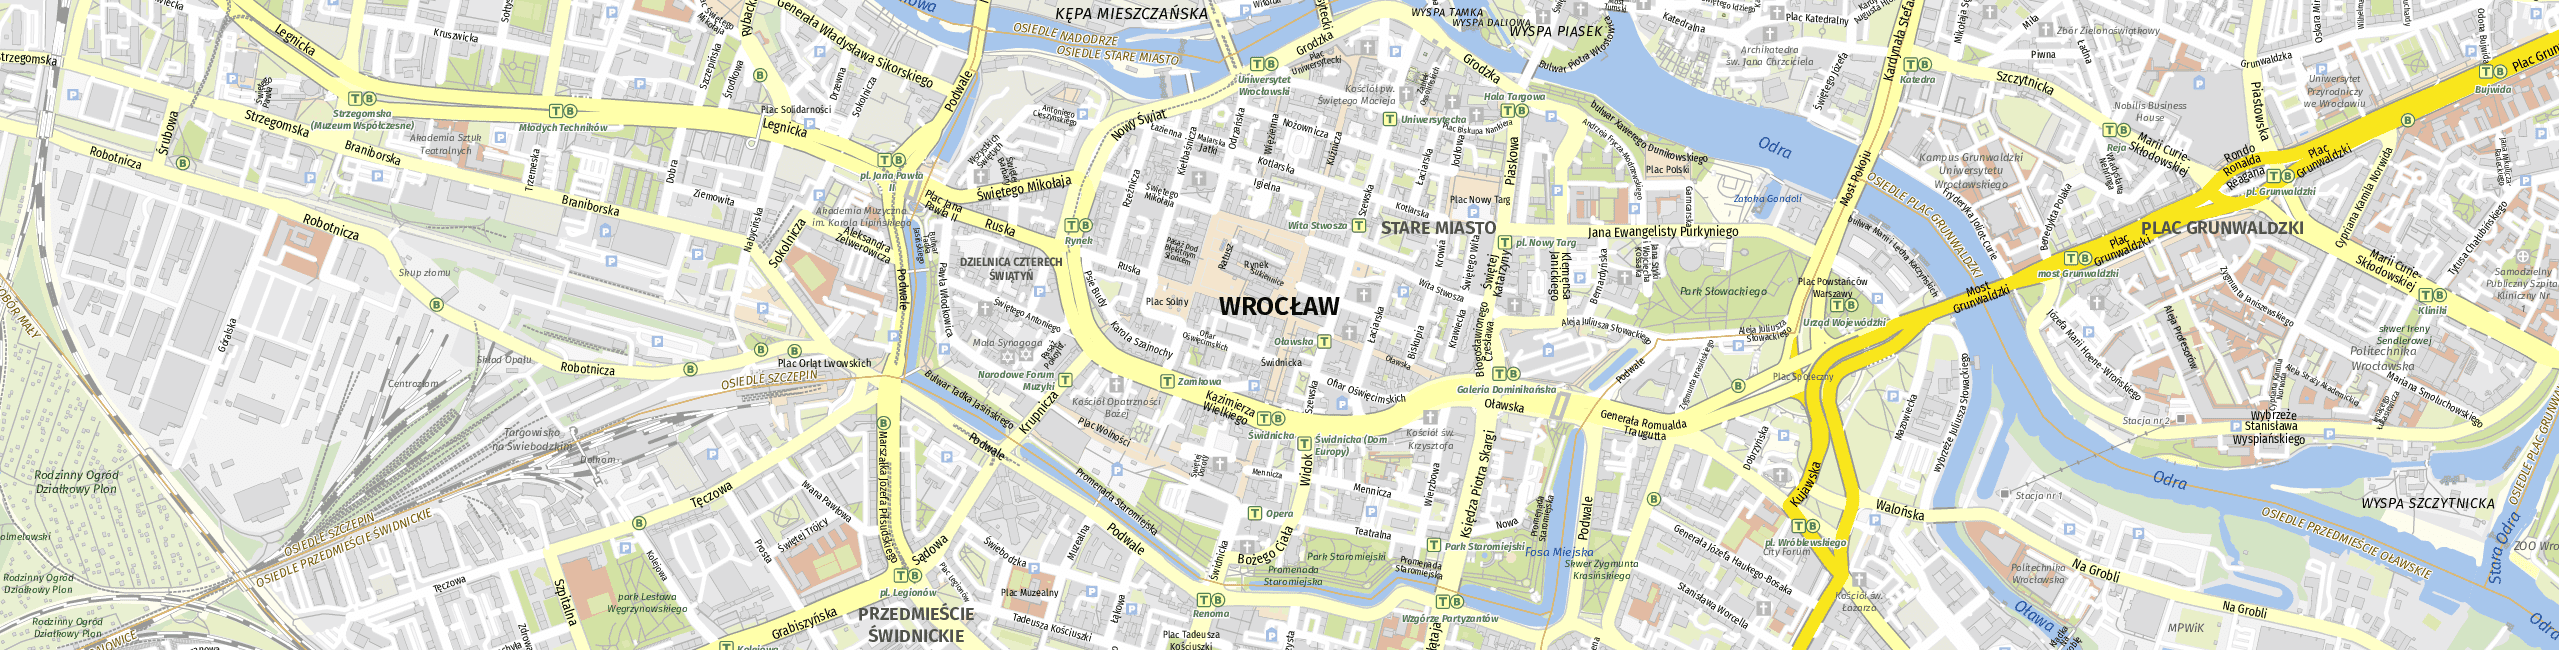 Stadtplan Wrocław zum Downloaden.